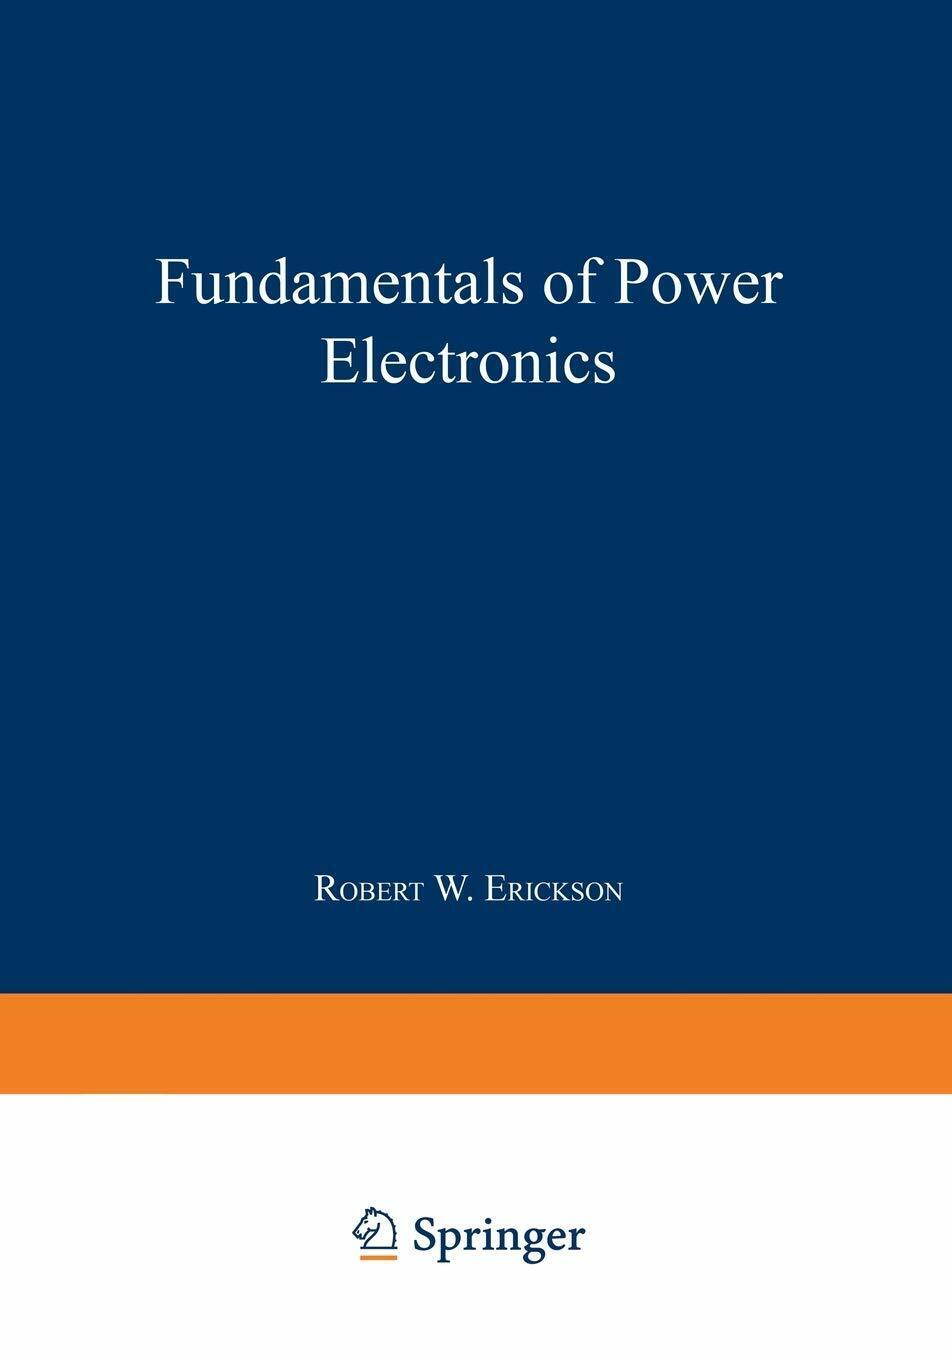 Fundamentals of Power Electronics - Erickson - Springer, 2013 libro usato